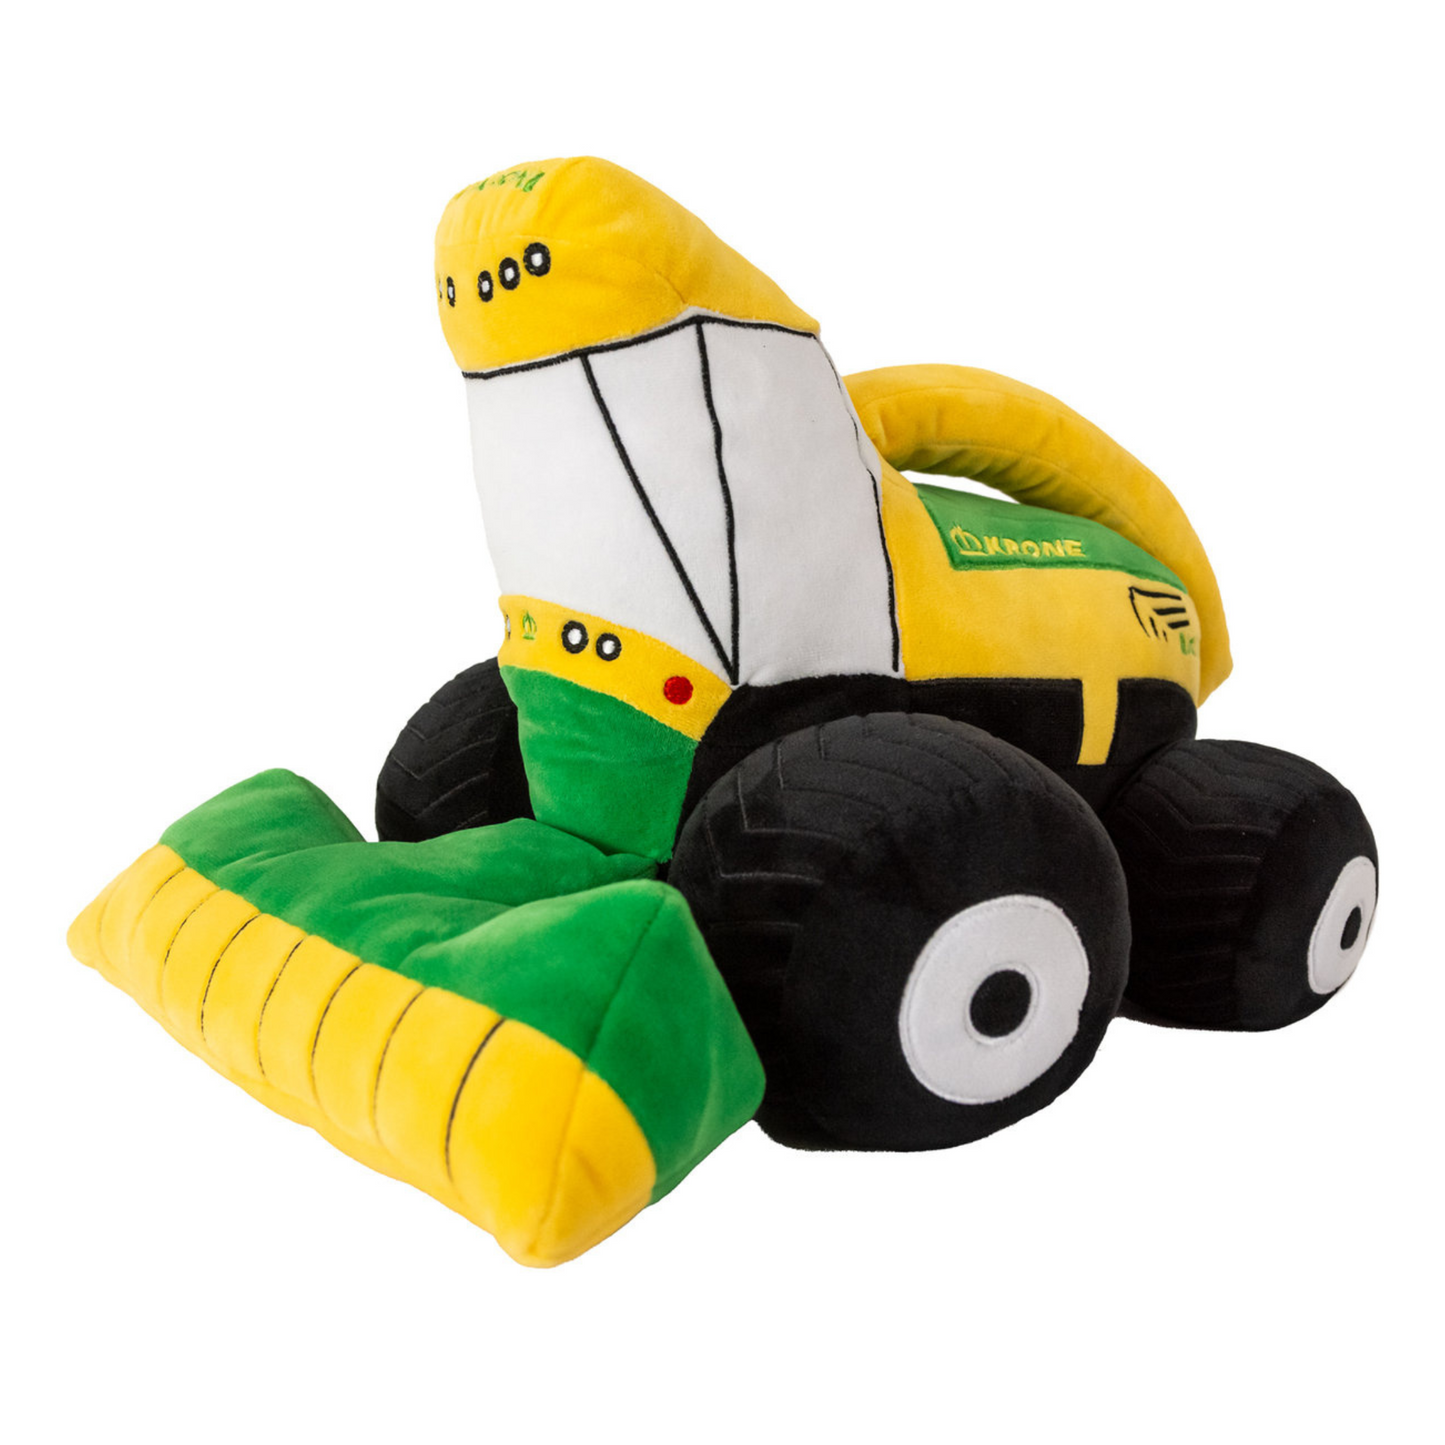 BiG X Plush Chopper Soft Toy